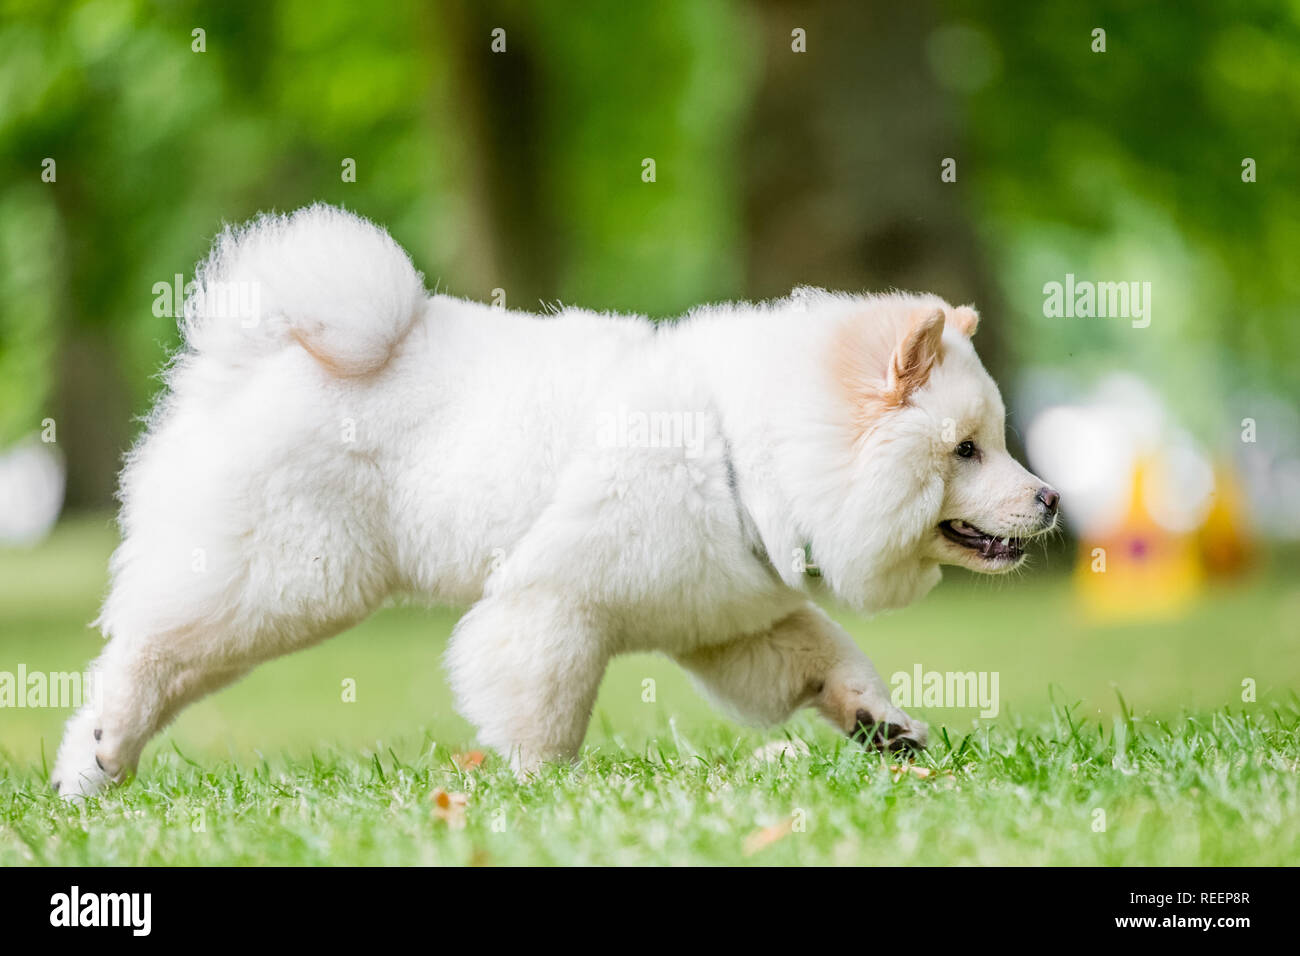 Close up chiot Samoyède exécutant dans un pré à la recherche sur le côté. Blanc moelleux mignon chien avec de longs poils dans la campagne ou le parc. Banque D'Images